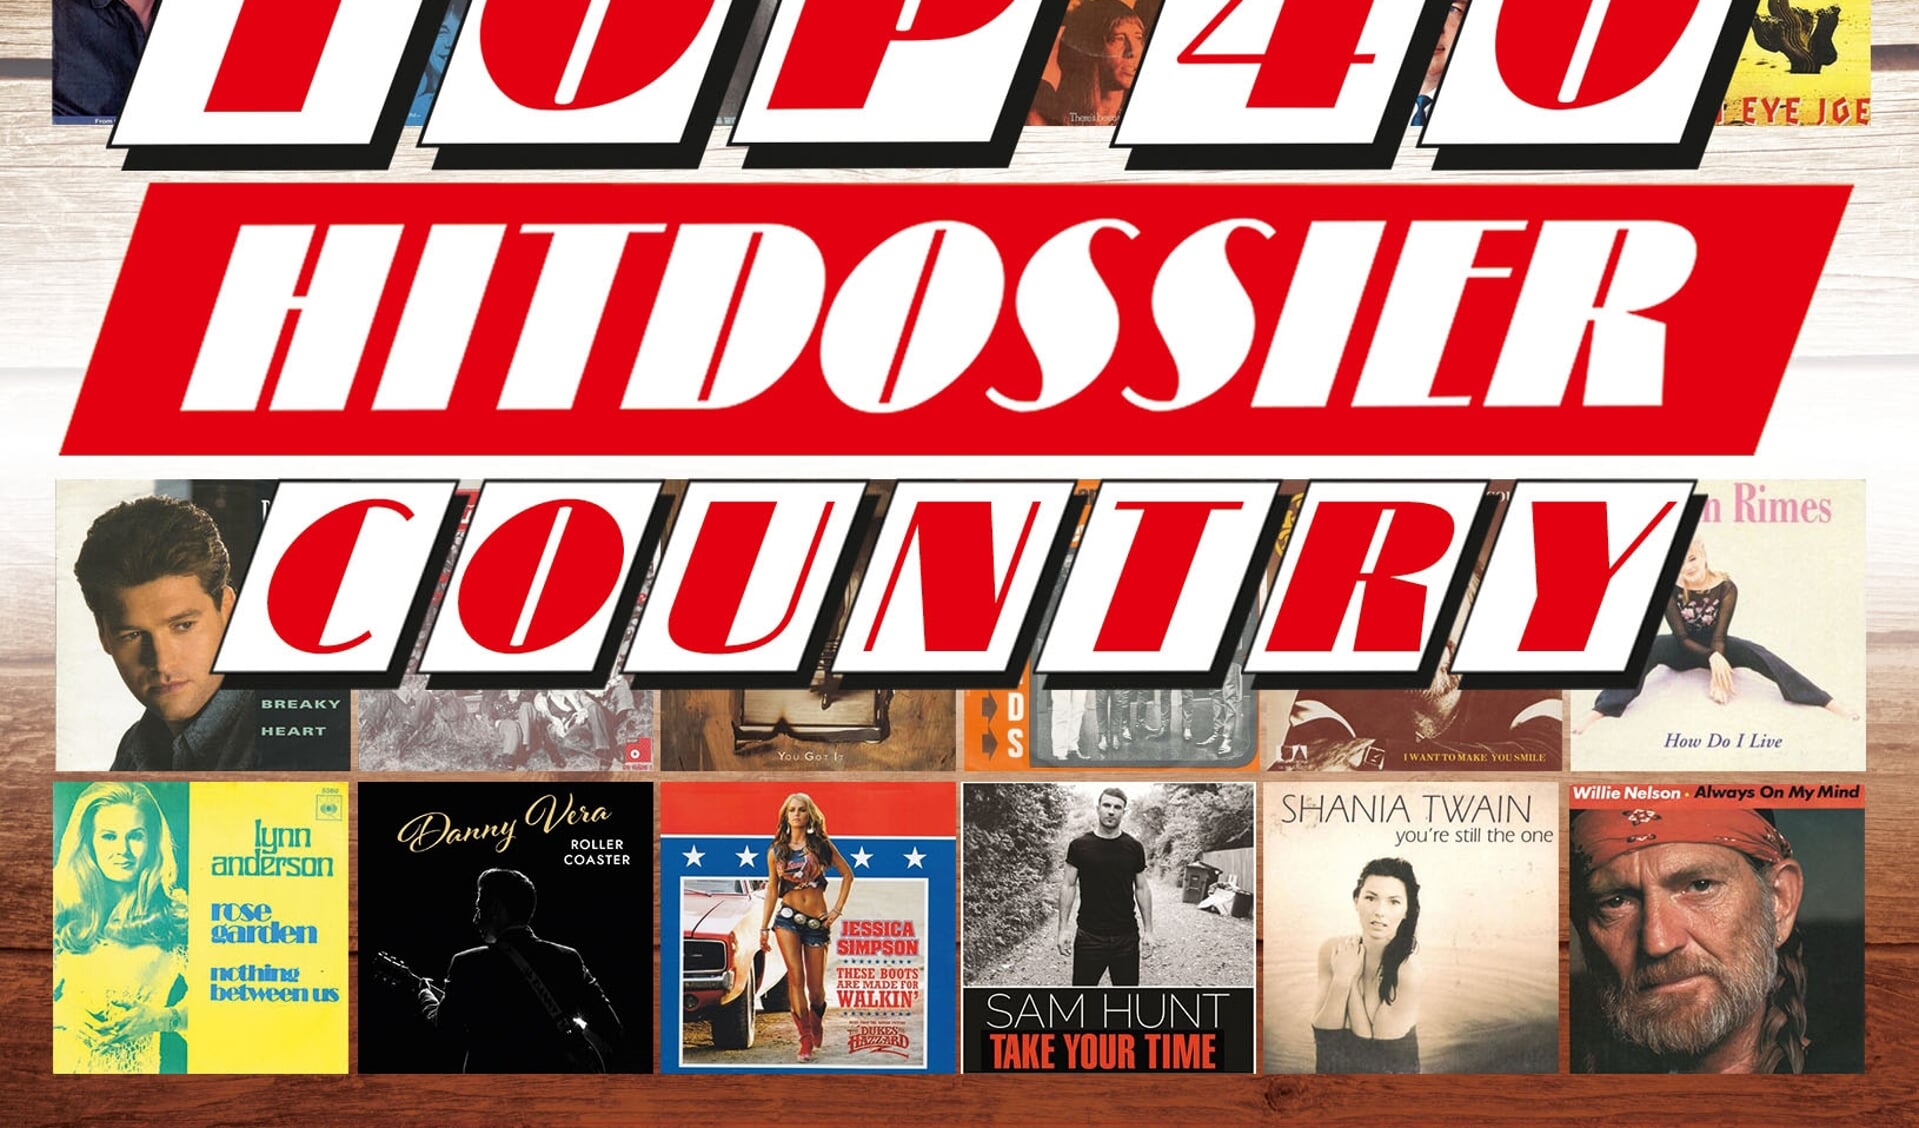 De box bevat een schitterend overzicht van de grootste country & western hits die ooit de Top 40 binnen kwamen.